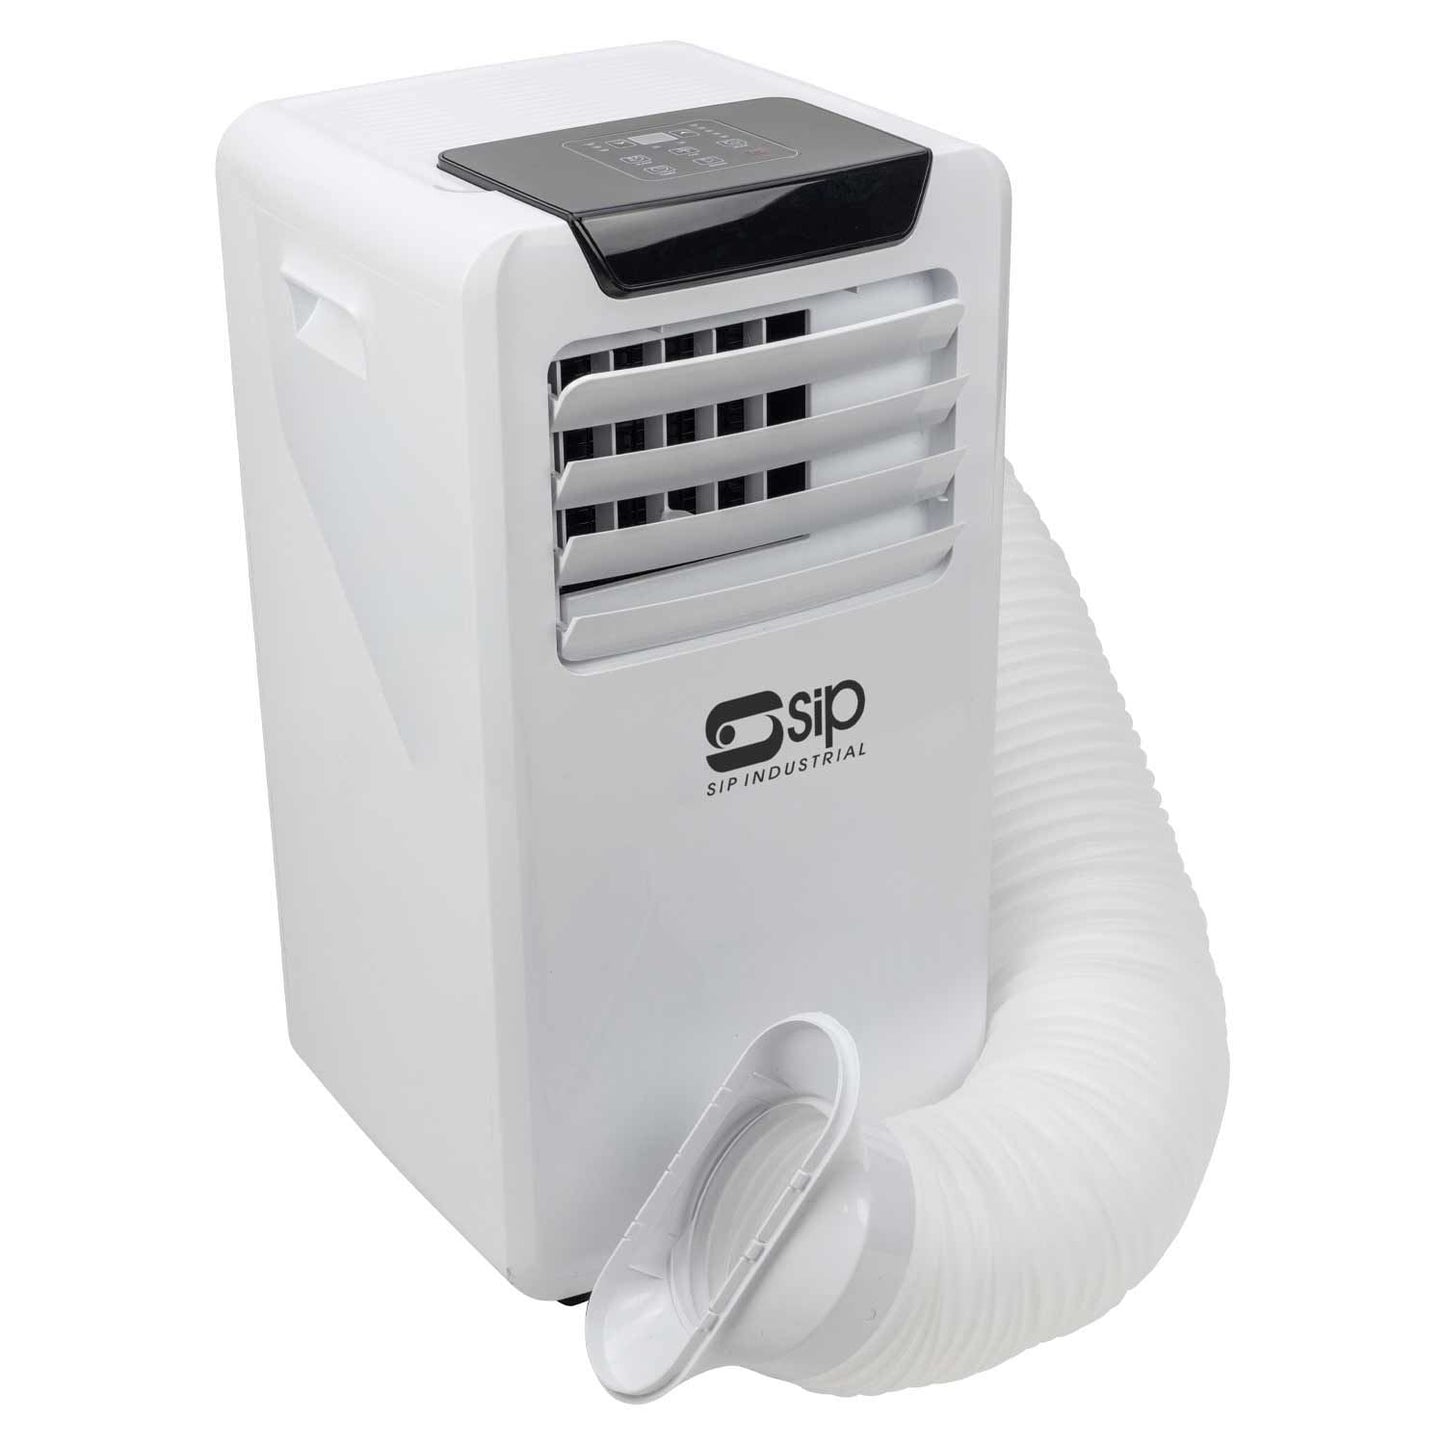 SIP Industrial 4-in-1 Air Conditioner